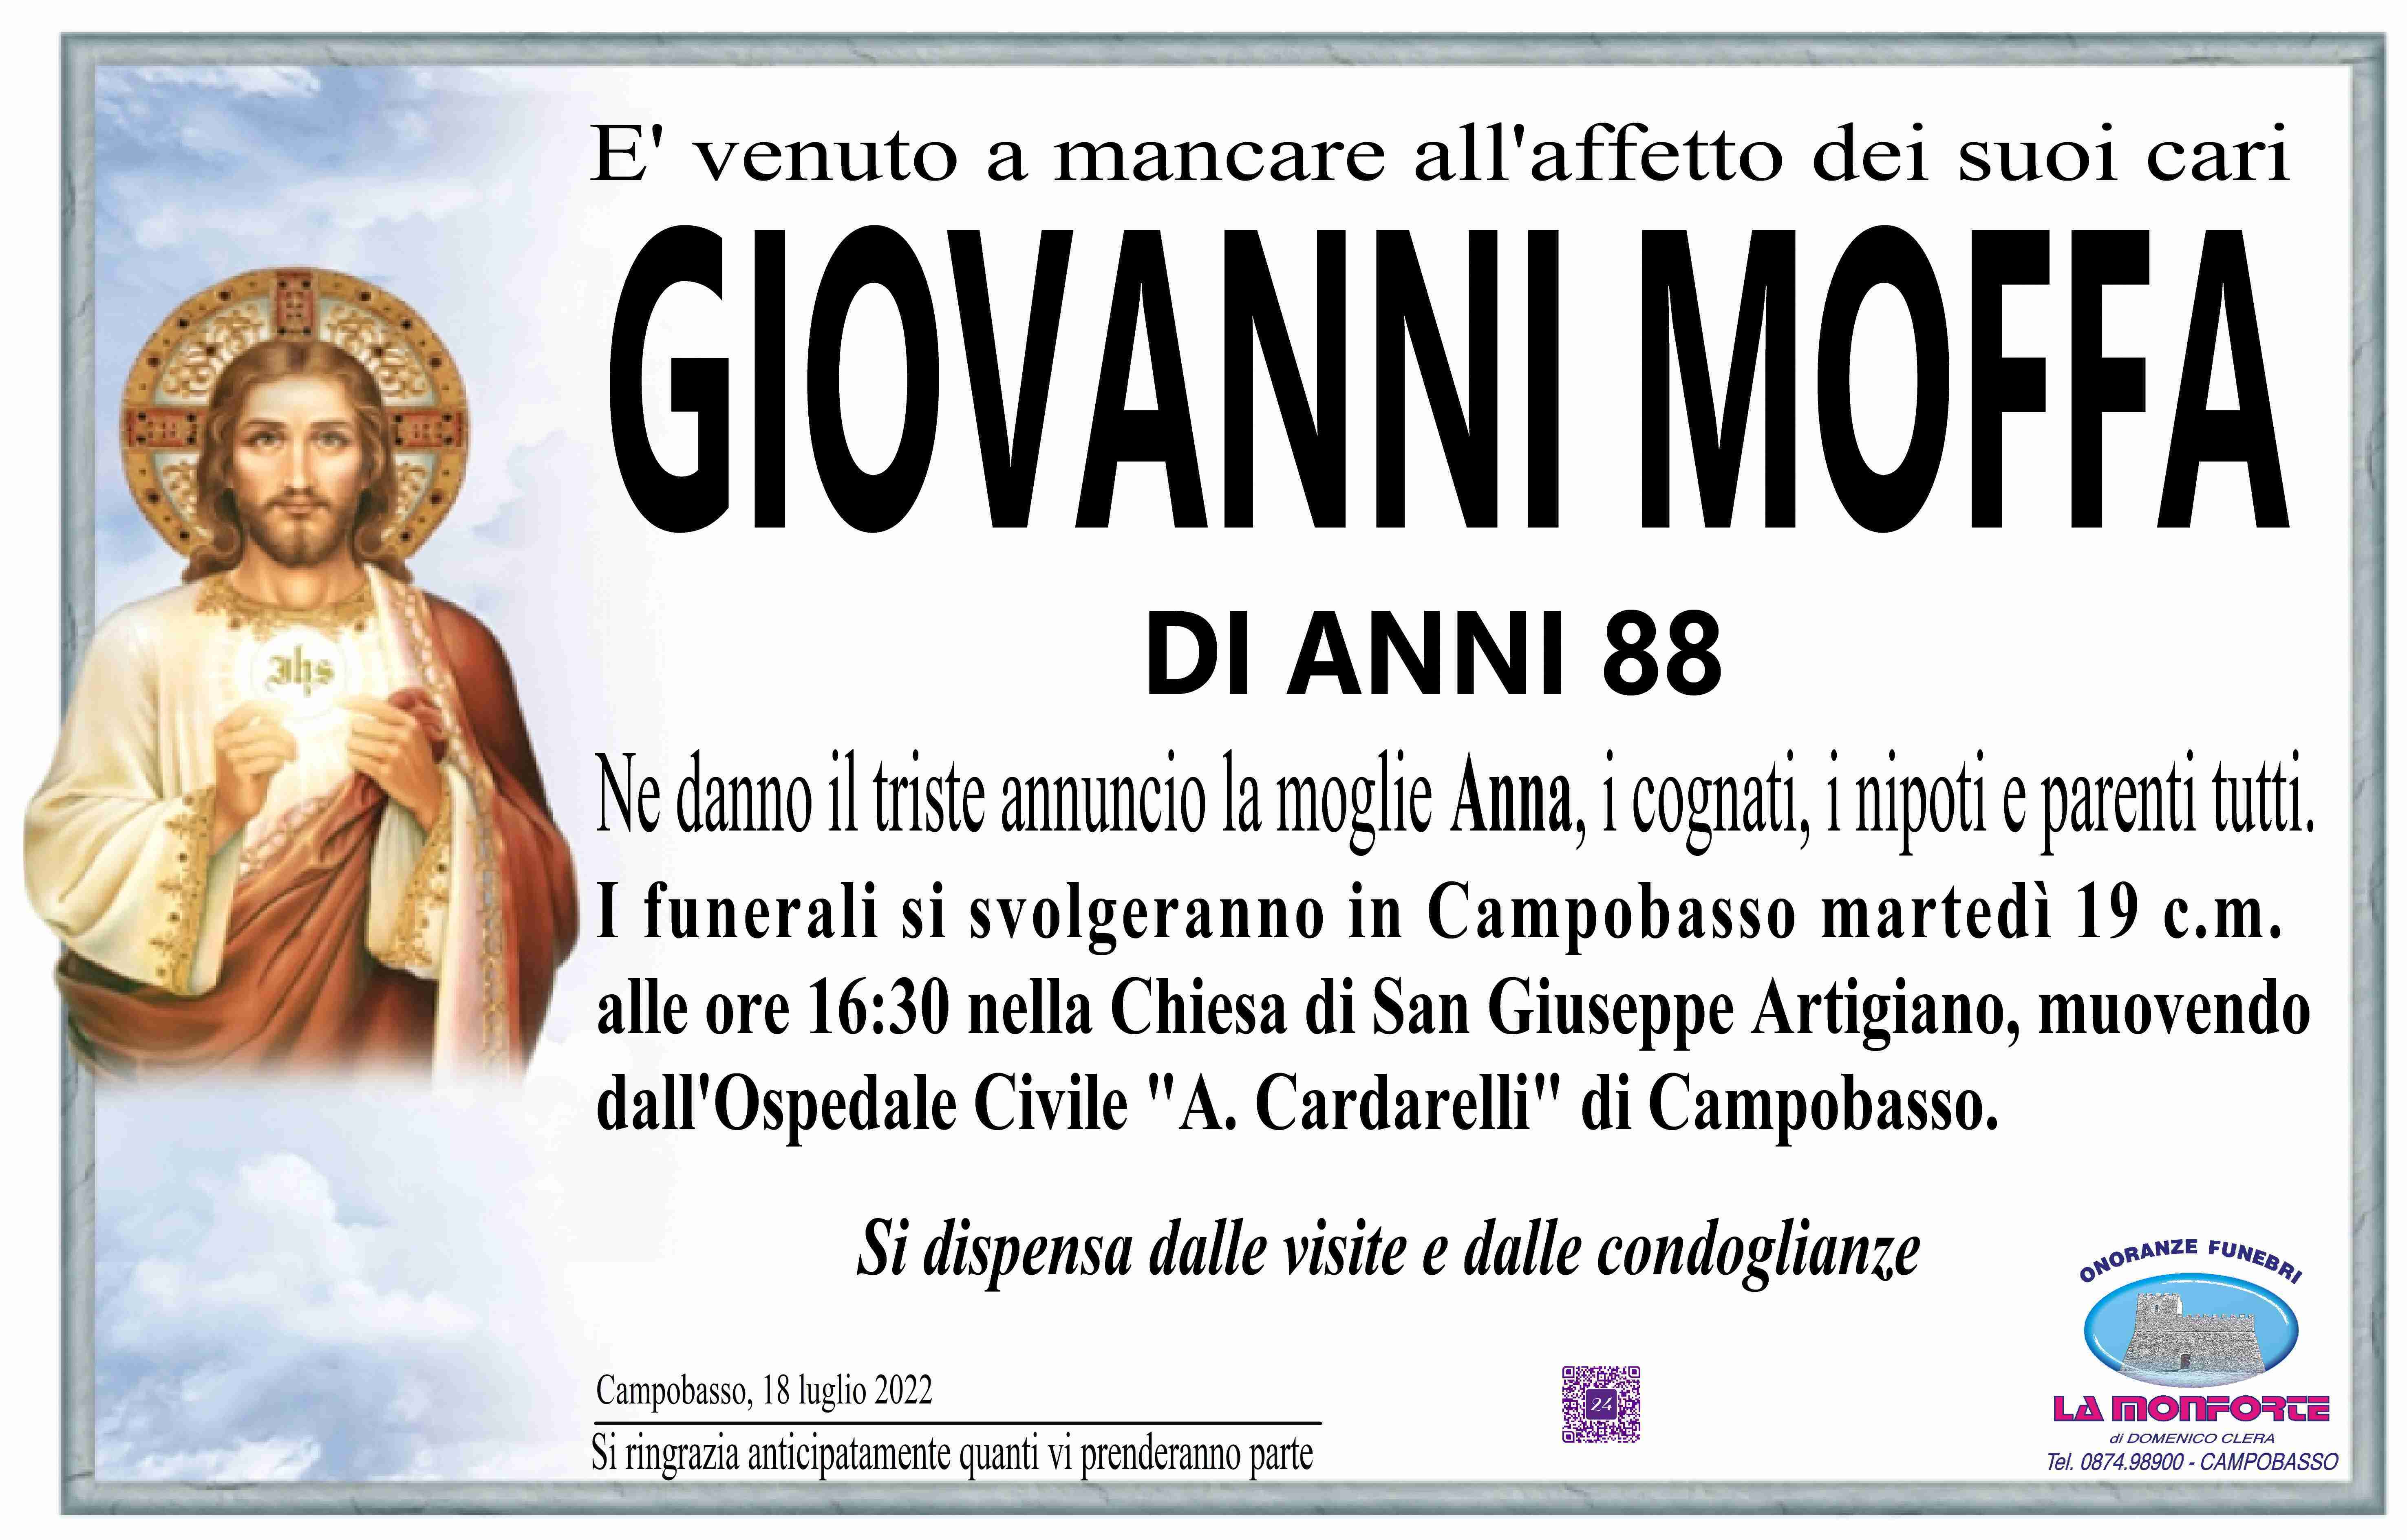 Giovanni Moffa